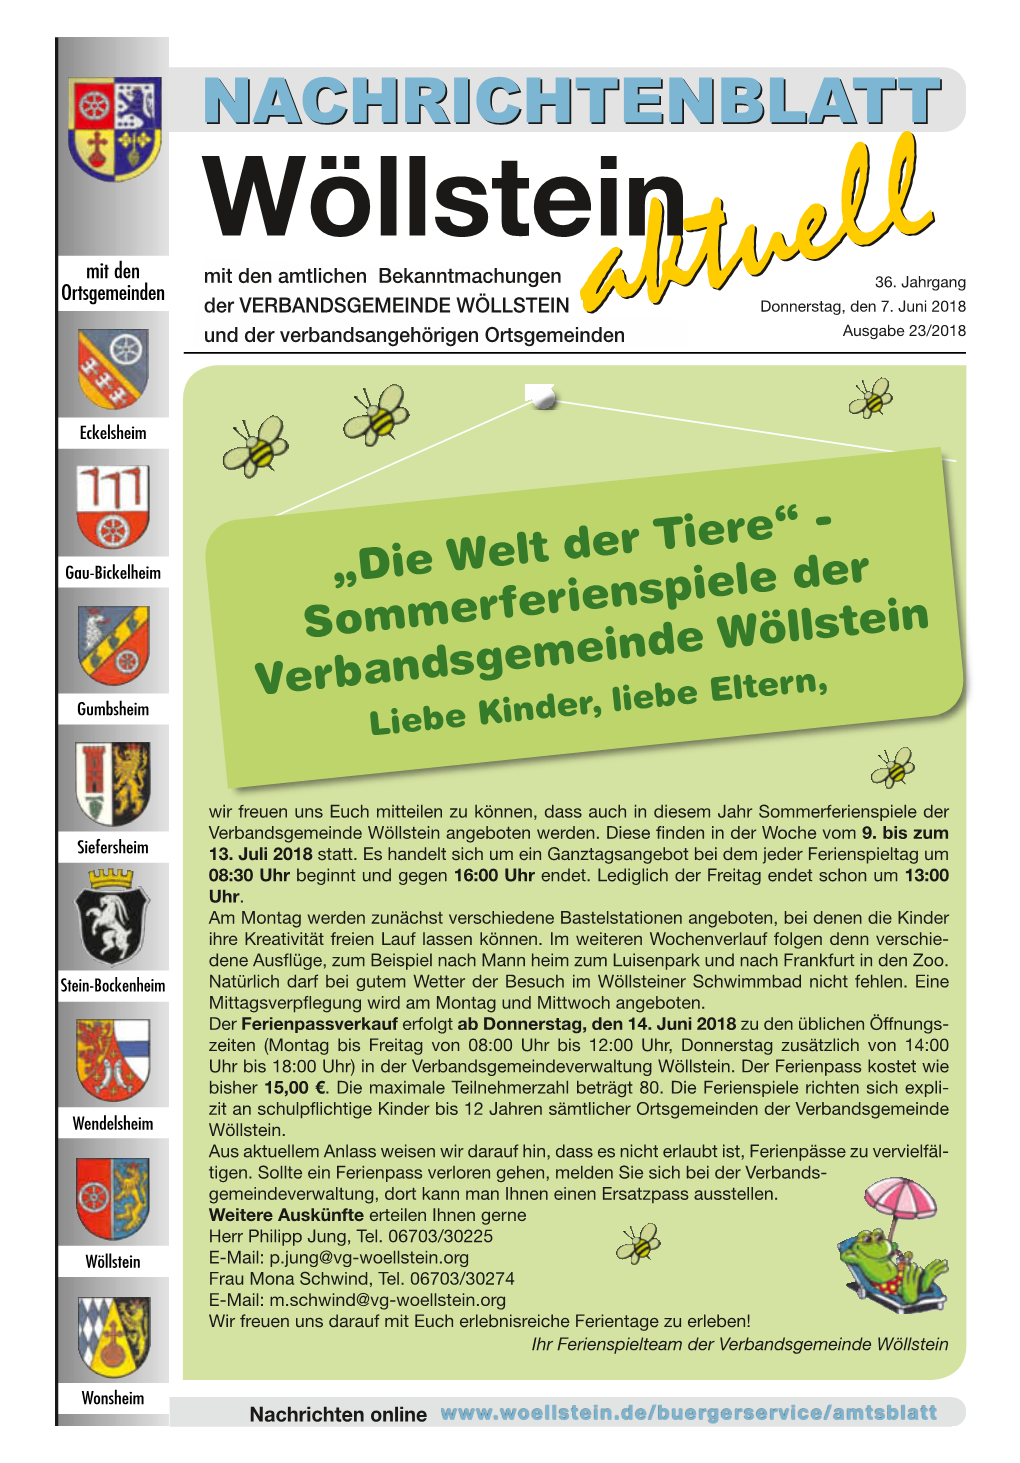 Die Welt Der Tiere“ - Sommerferienspiele Der Verbandsgemeinde Wöllstein Liebe Kinder, Liebe Eltern